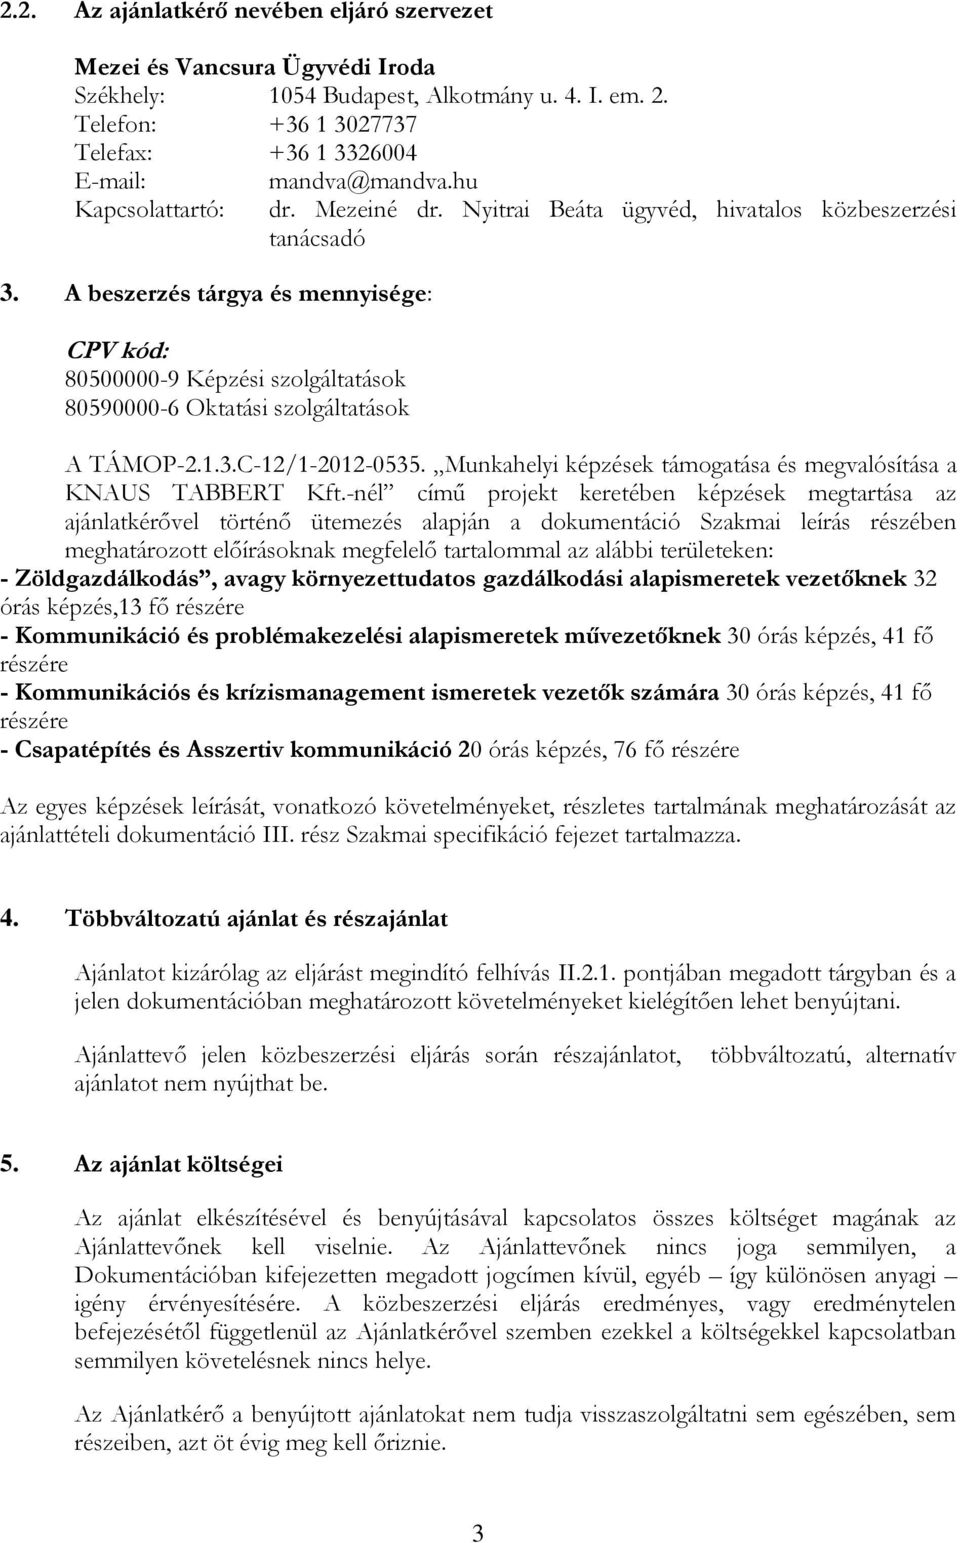 Nyitrai Beáta ügyvéd, hivatalos közbeszerzési tanácsadó A TÁMOP-2.1.3.C-12/1-2012-0535. Munkahelyi képzések támogatása és megvalósítása a KNAUS TABBERT Kft.